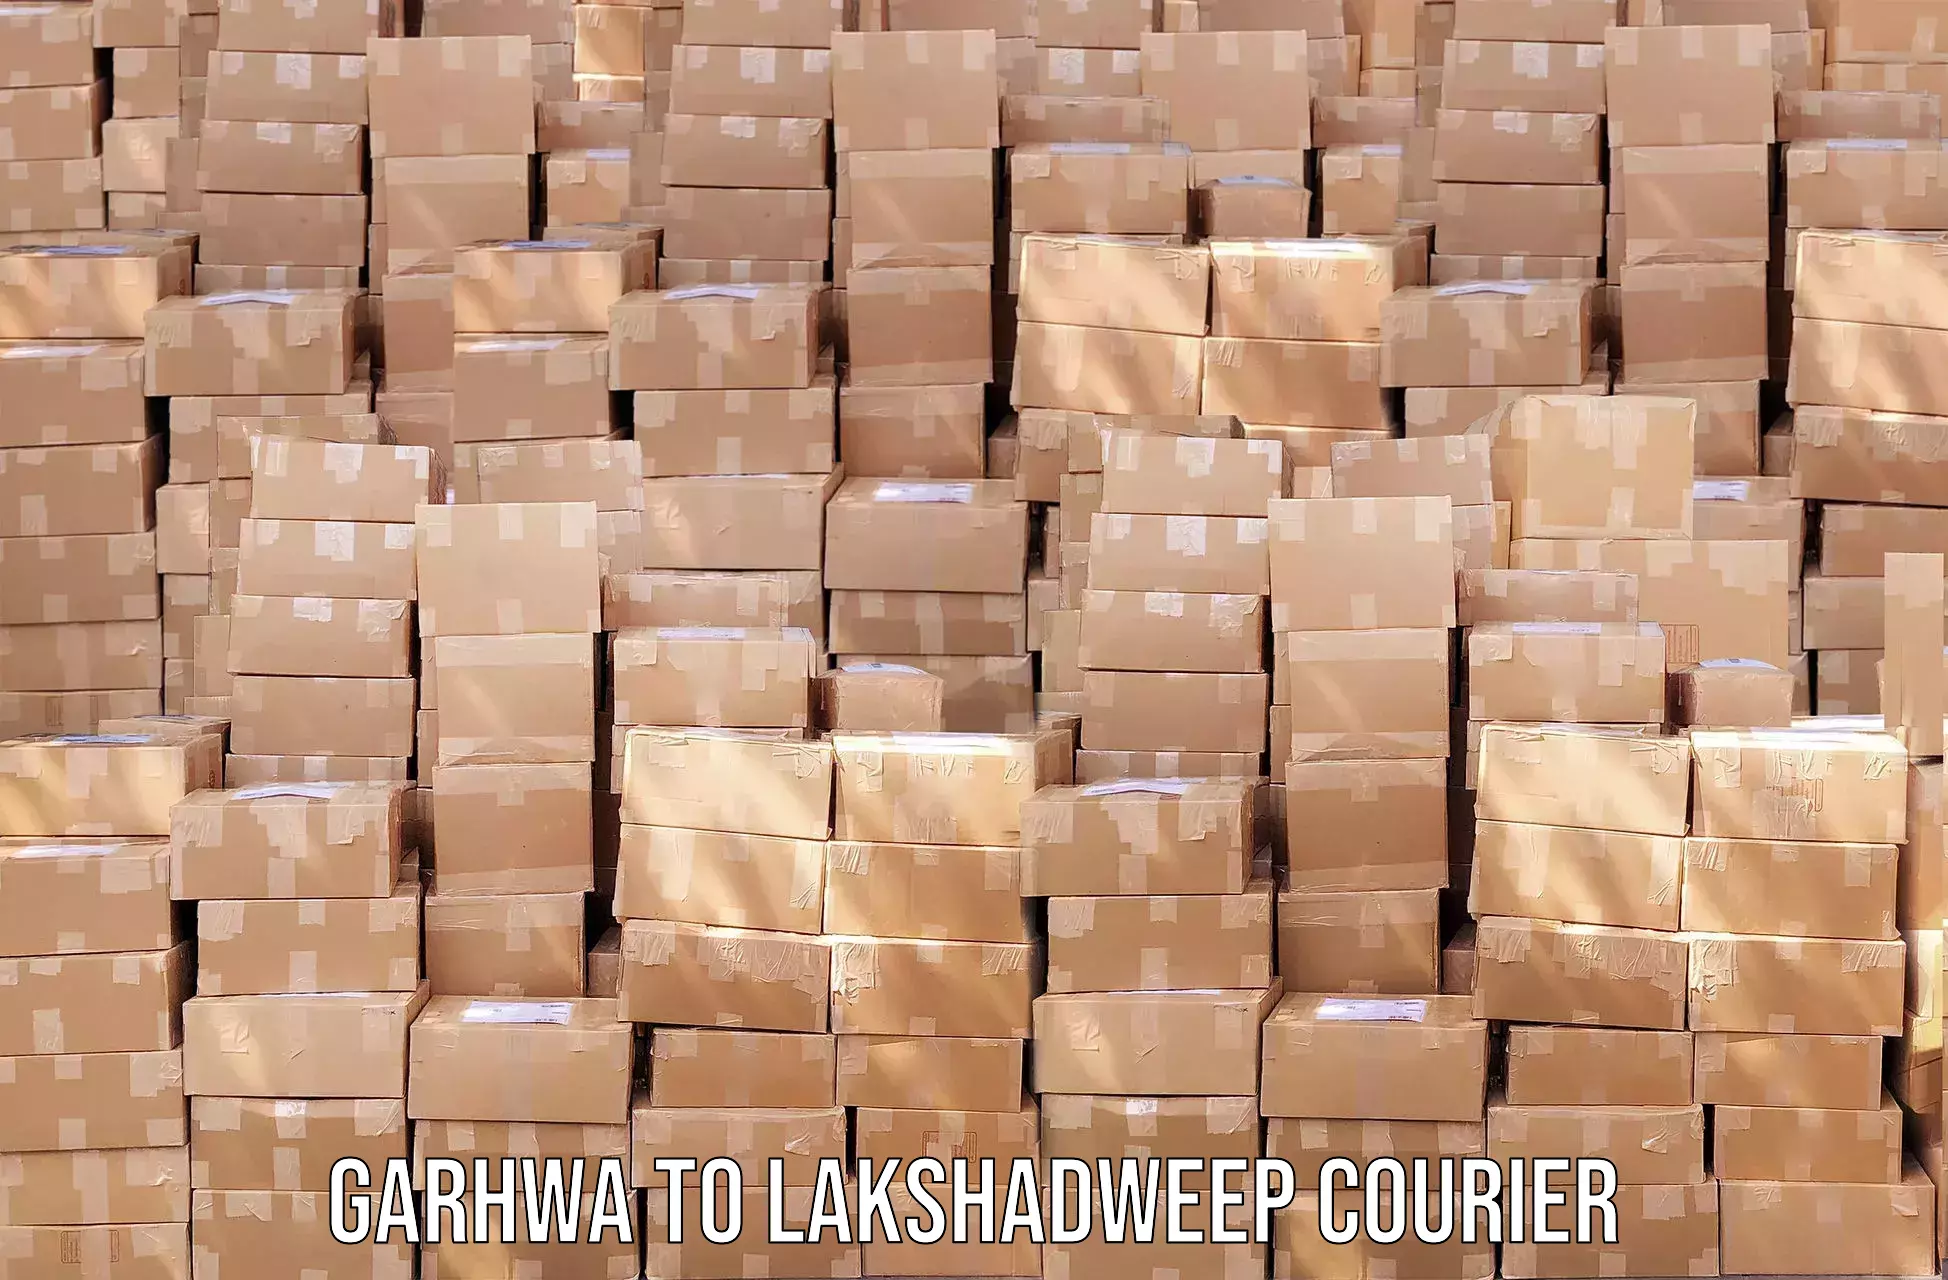 Digital courier platforms Garhwa to Lakshadweep